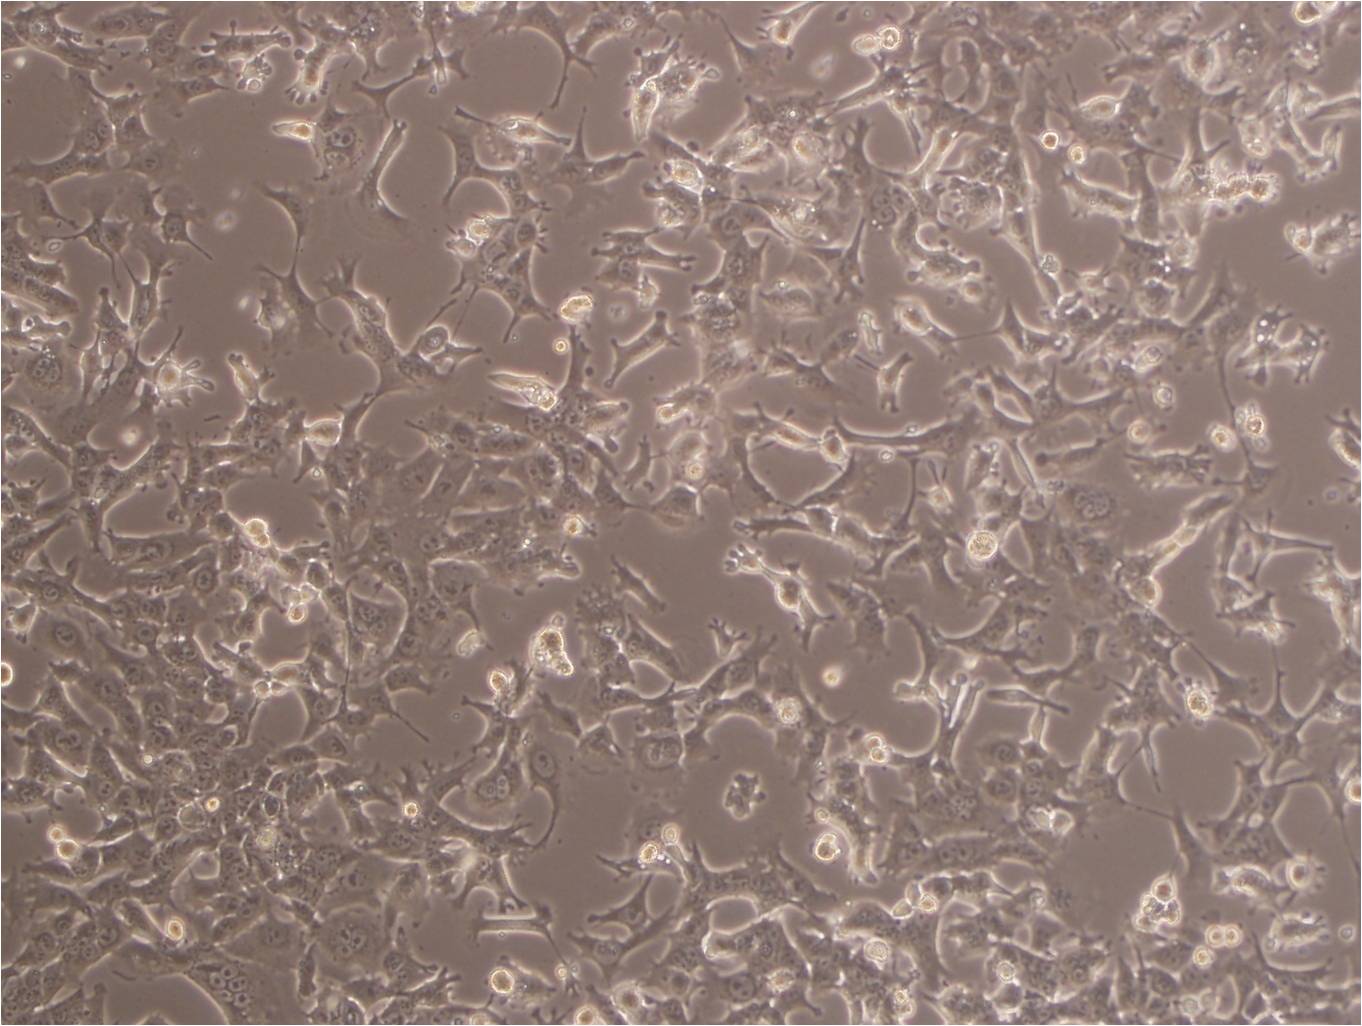 CCD-1095Sk:人乳腺浸润性导管癌旁皮肤复苏细胞(提供STR鉴定图谱),CCD-1095Sk